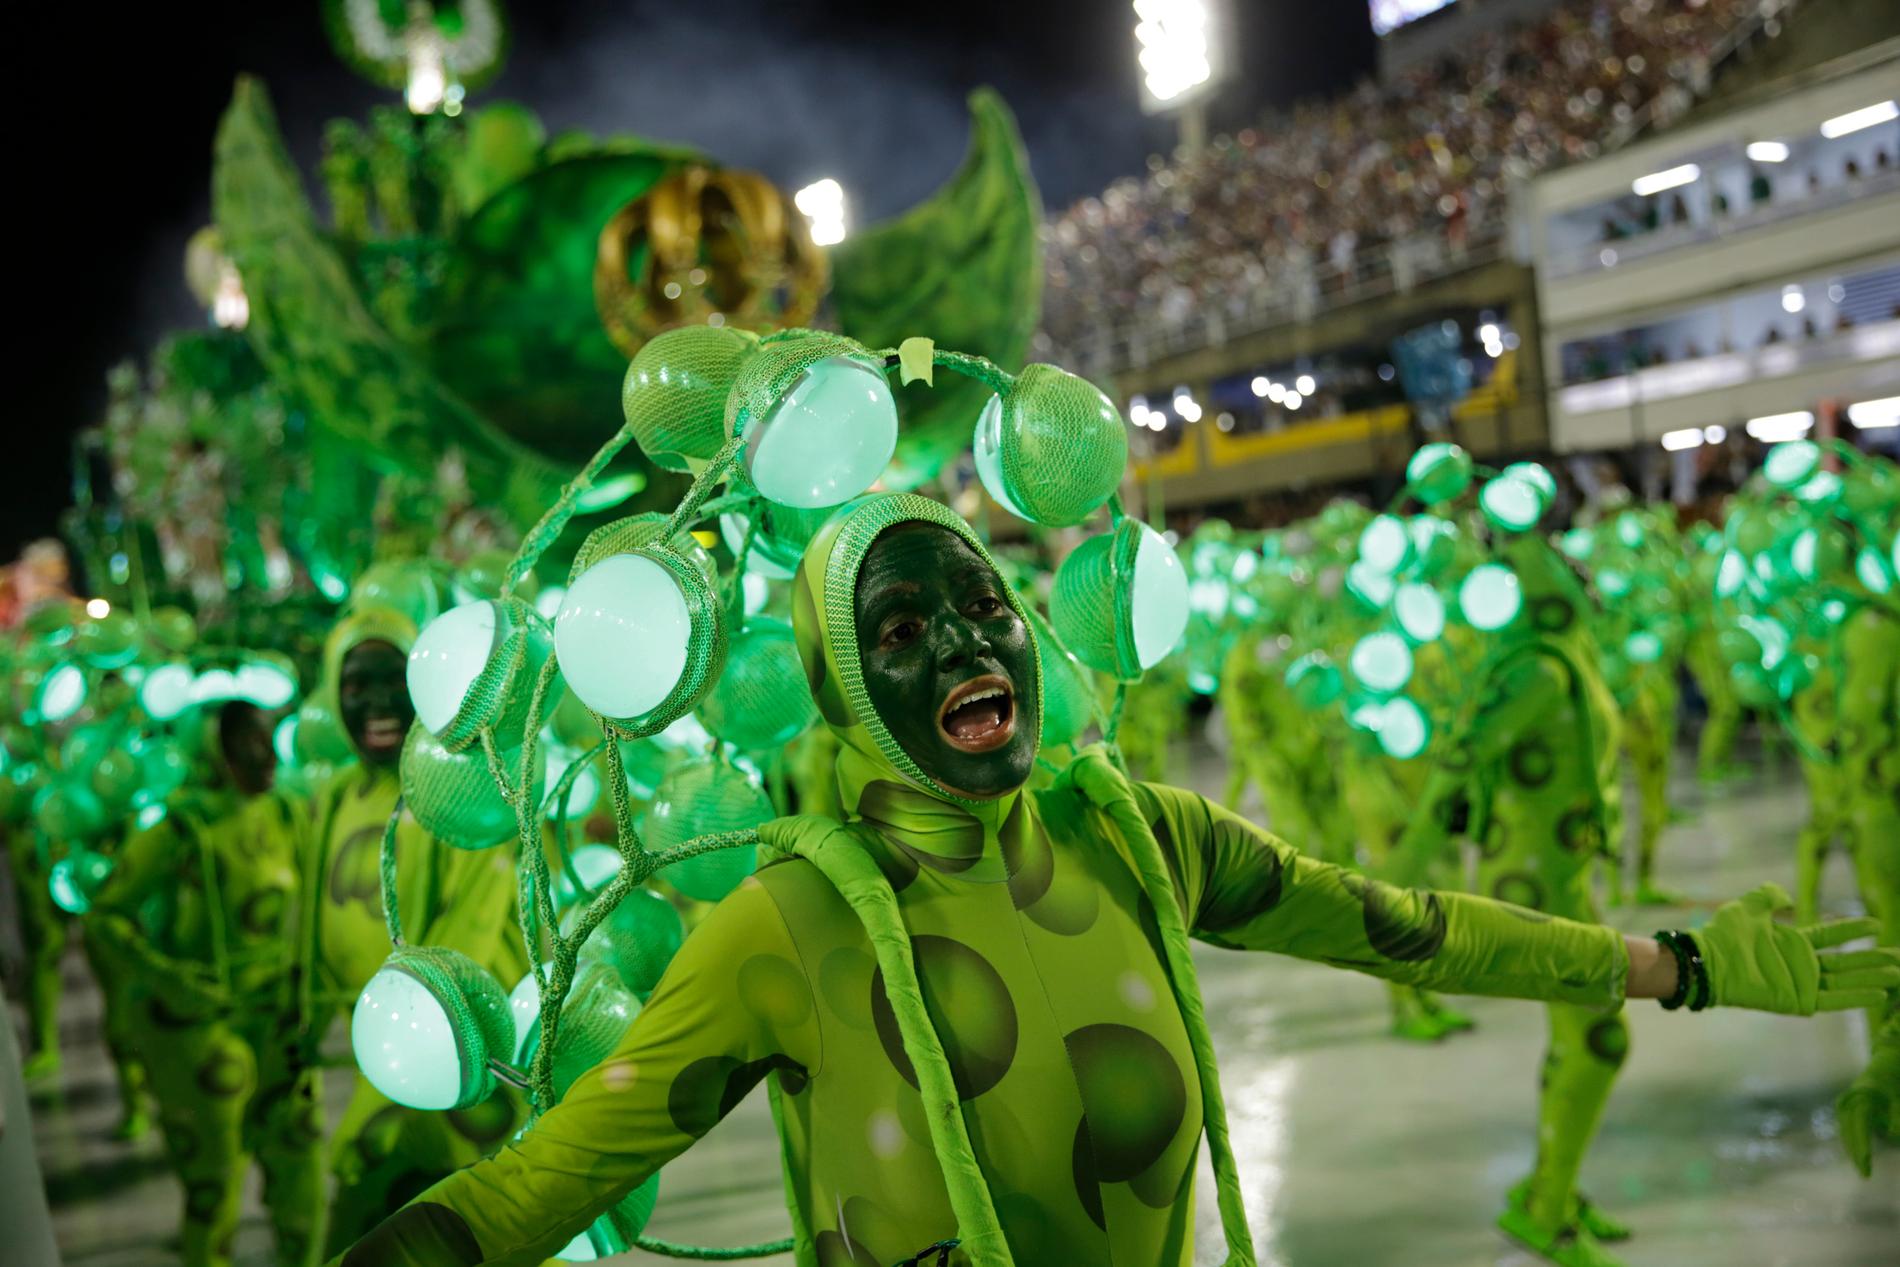 I Rio de Janeiro i Brasilien hålls karnevalernas karneval, där deltagare från de olika sambaskolorna framträder på den specialbyggda arenan Sambadromo.